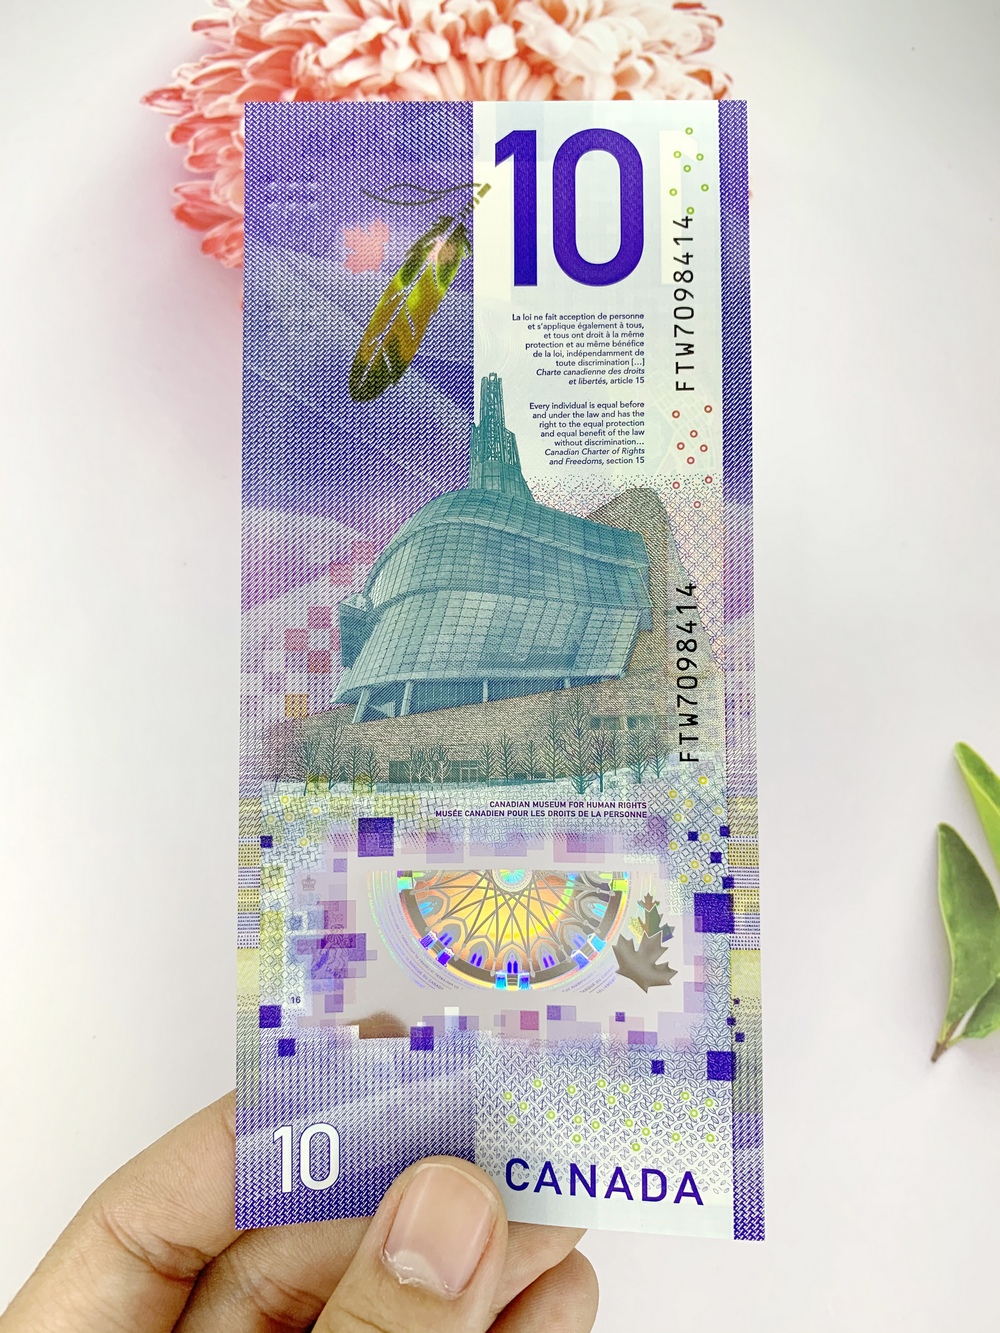 Tiền 10 Dollar Canada hình người phụ nữ kỷ niệm , tiền Polyme , tặng phơi nylon bảo quản tiền